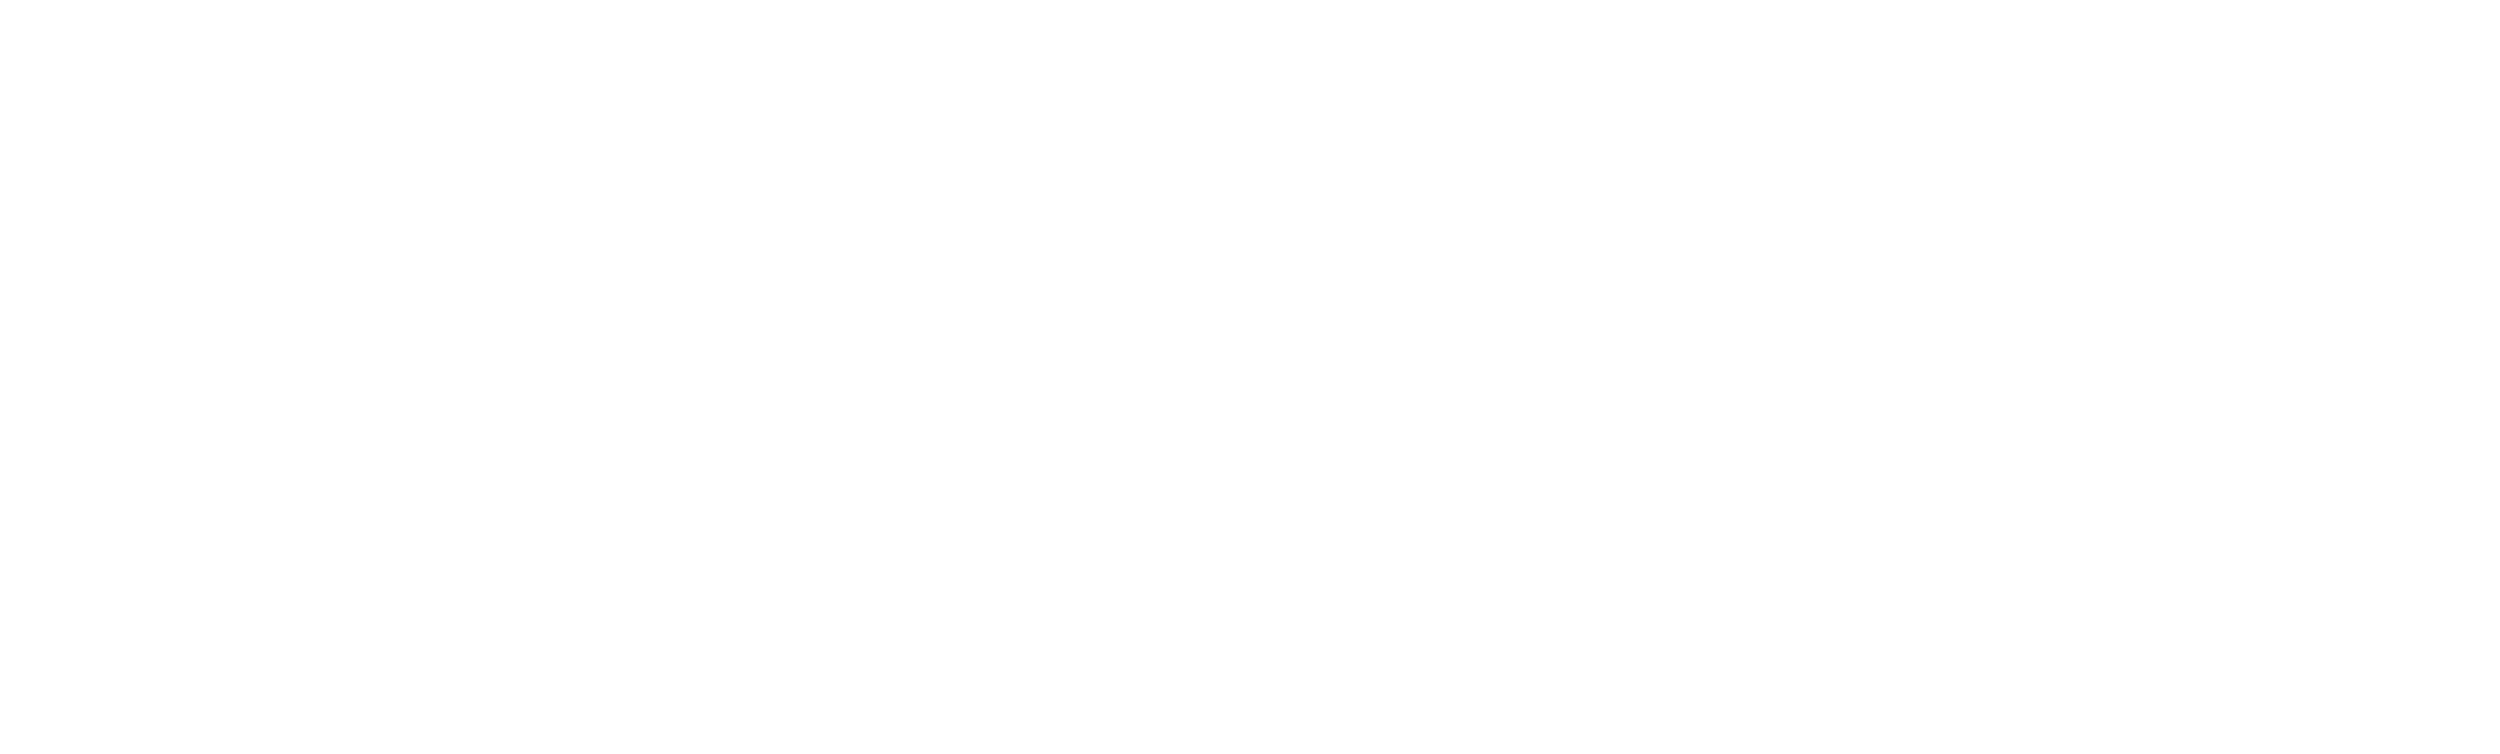 Amazon logo.PNG